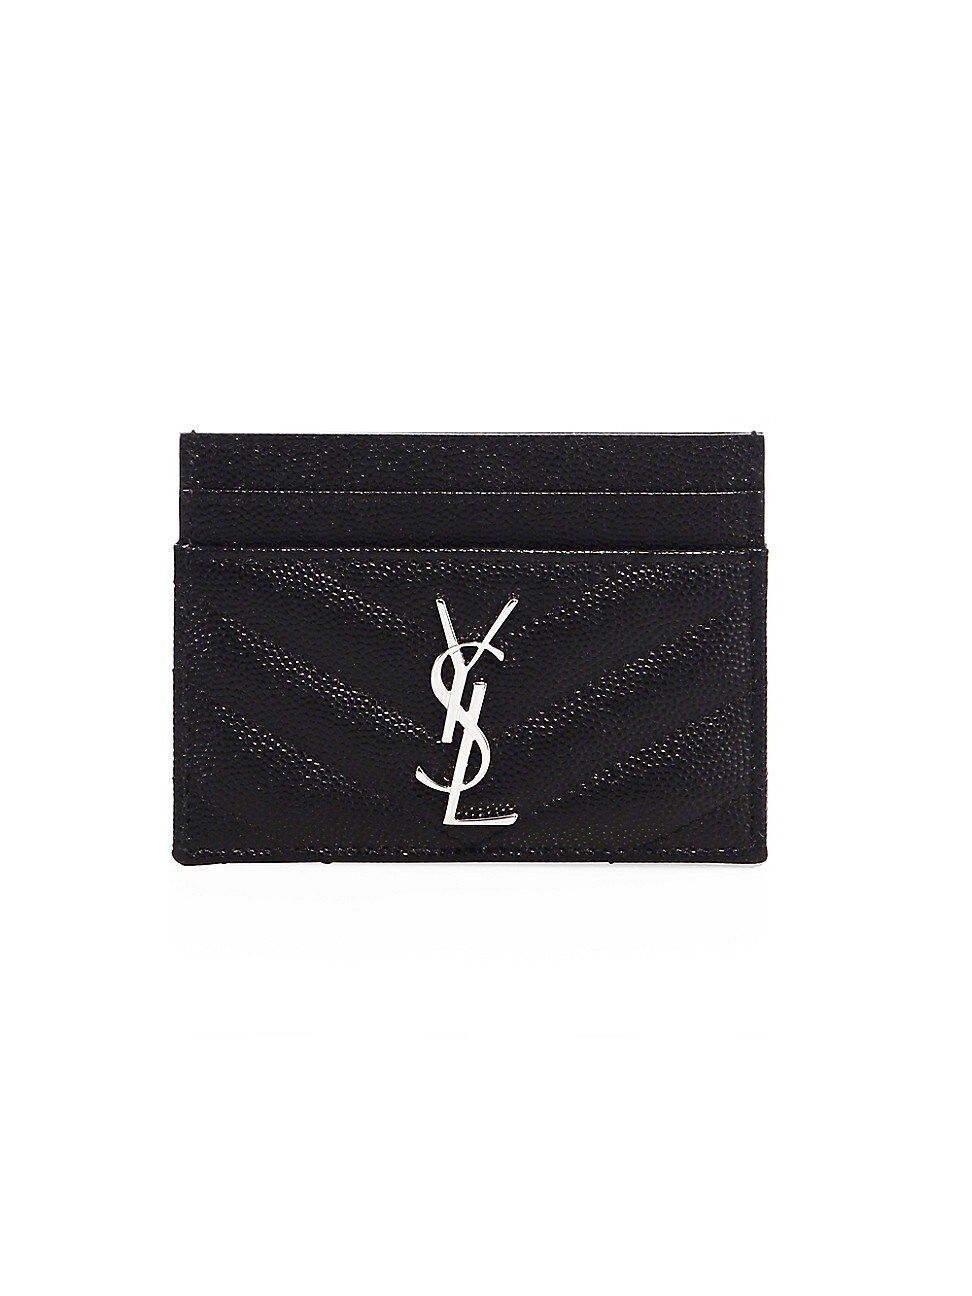 Saint Laurent Women's Monogram Matelassé Leather Card Case - Black | Saks Fifth Avenue